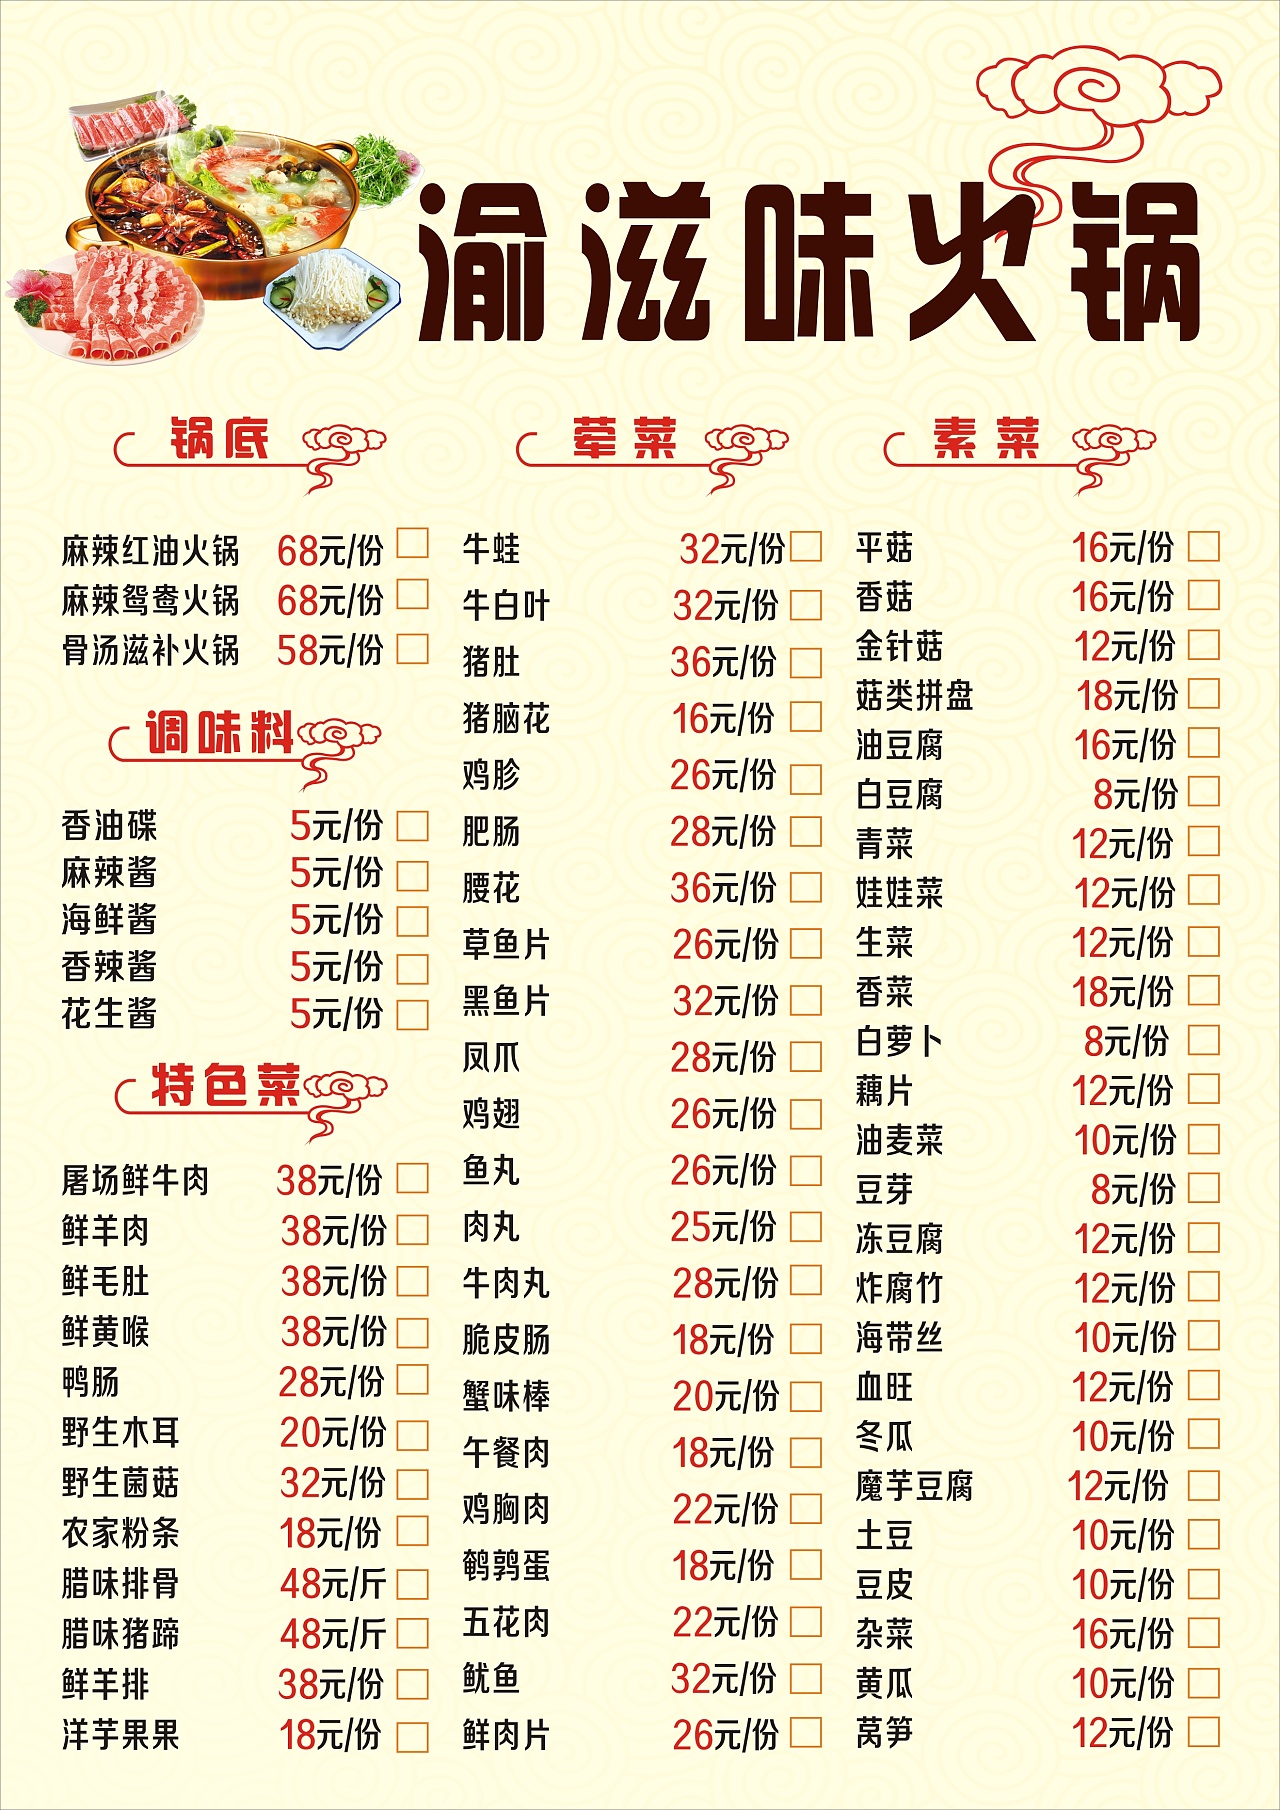 中国传统火锅店菜单美食文化火锅食材价目表菜单设计图片下载 - 觅知网